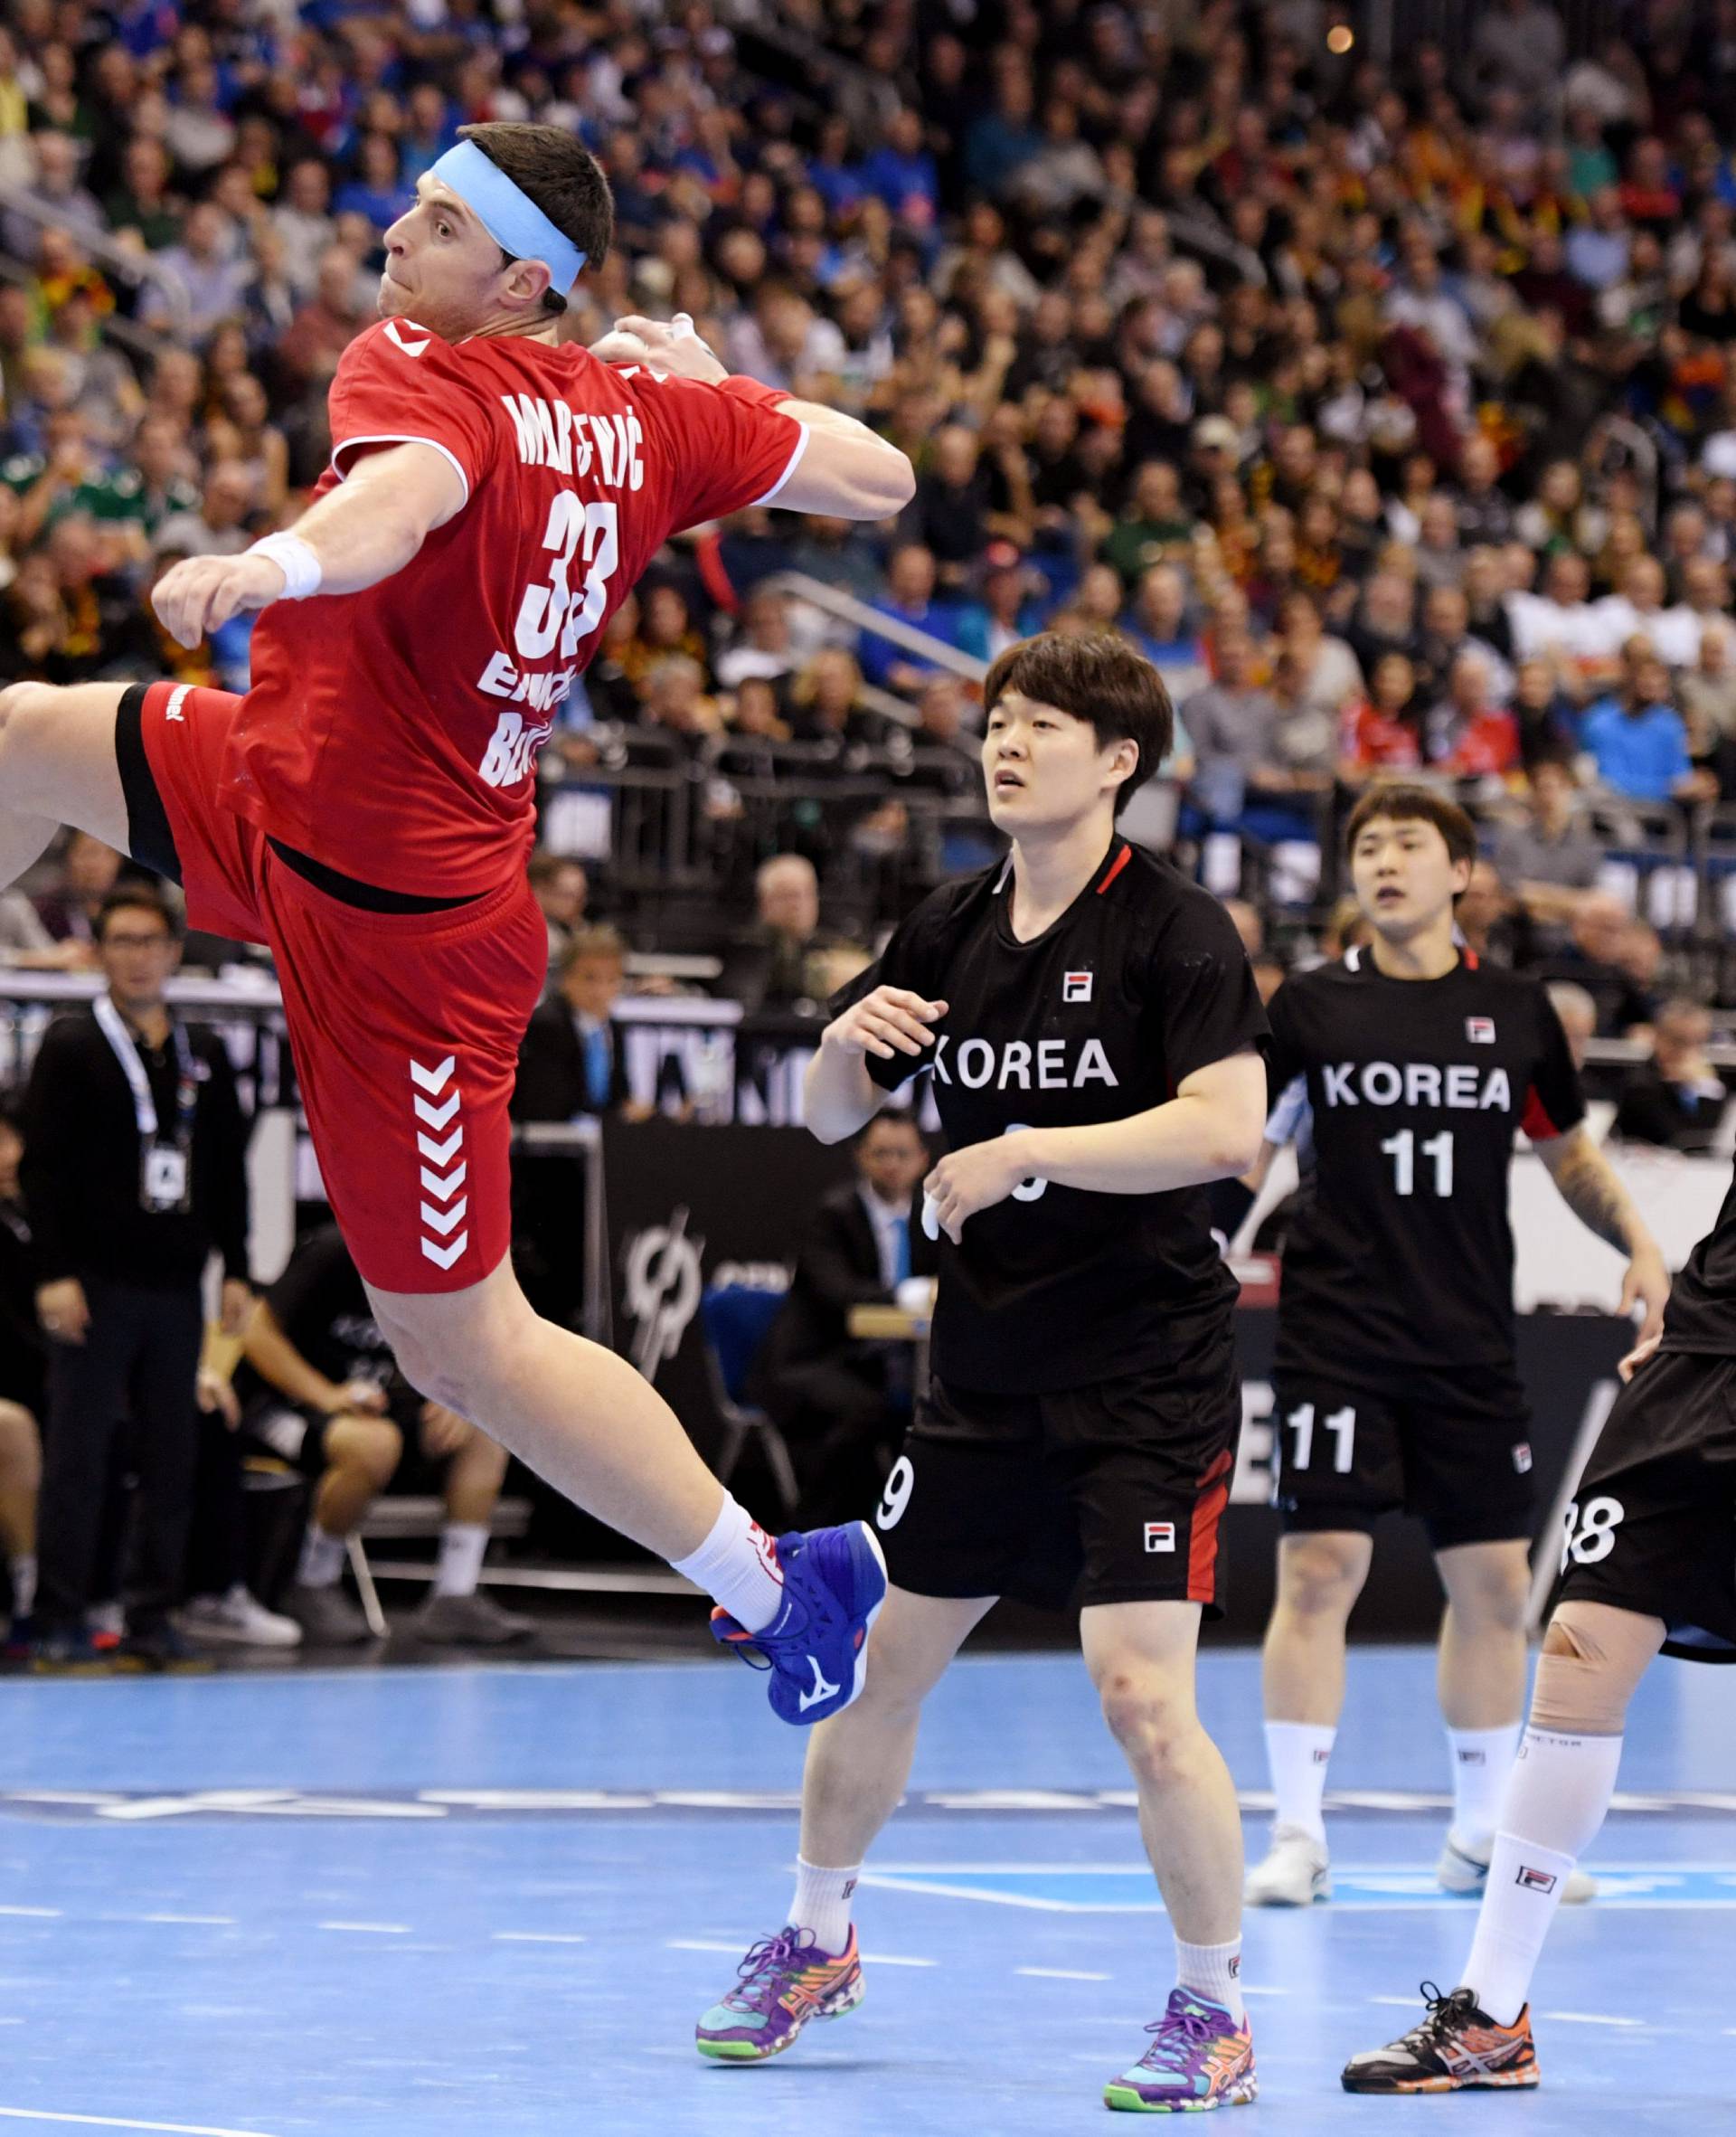 IHF Handball World Championship - Germany & Denmark 2019 - Group A - Korea v Serbia